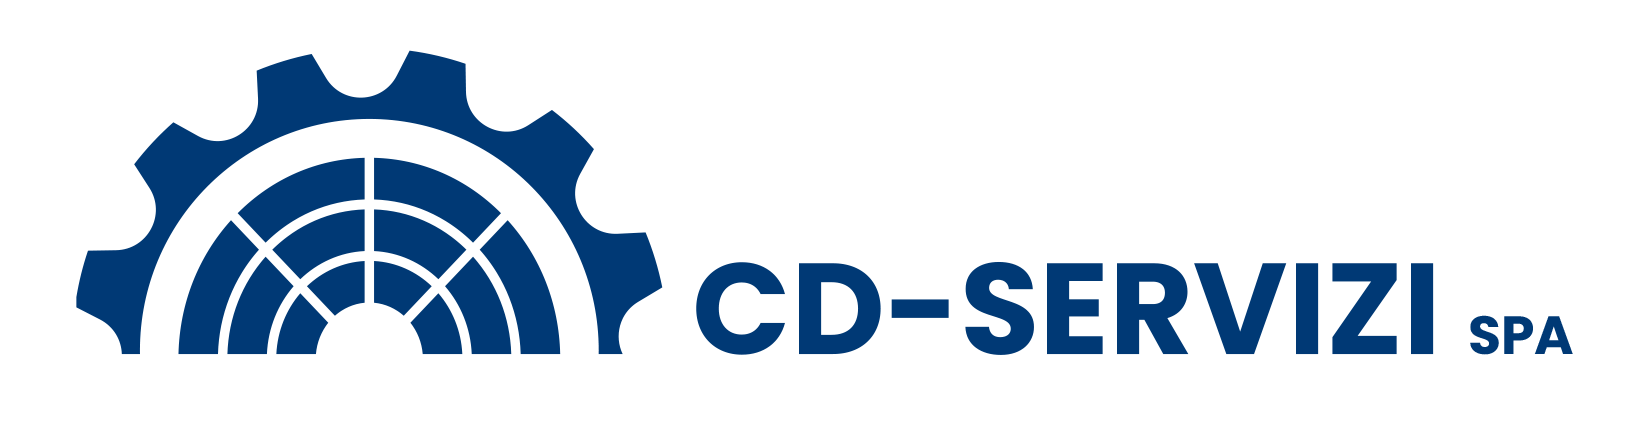 logo CD-SERVIZI verticale blu